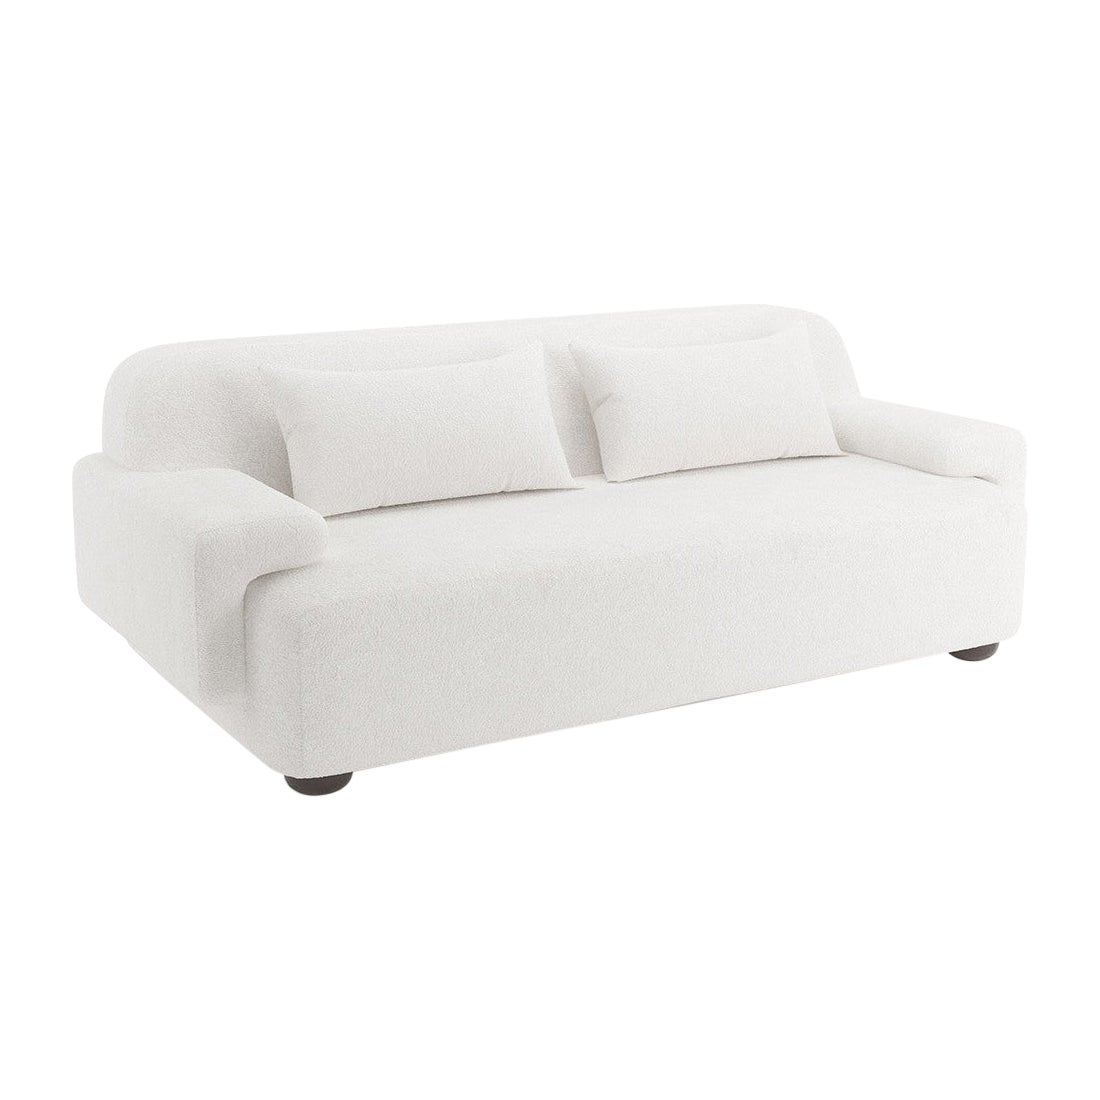 Popus Editions Lena 3 Seater Sofa in White Venice Chenille Velvet Upholstery For Sale